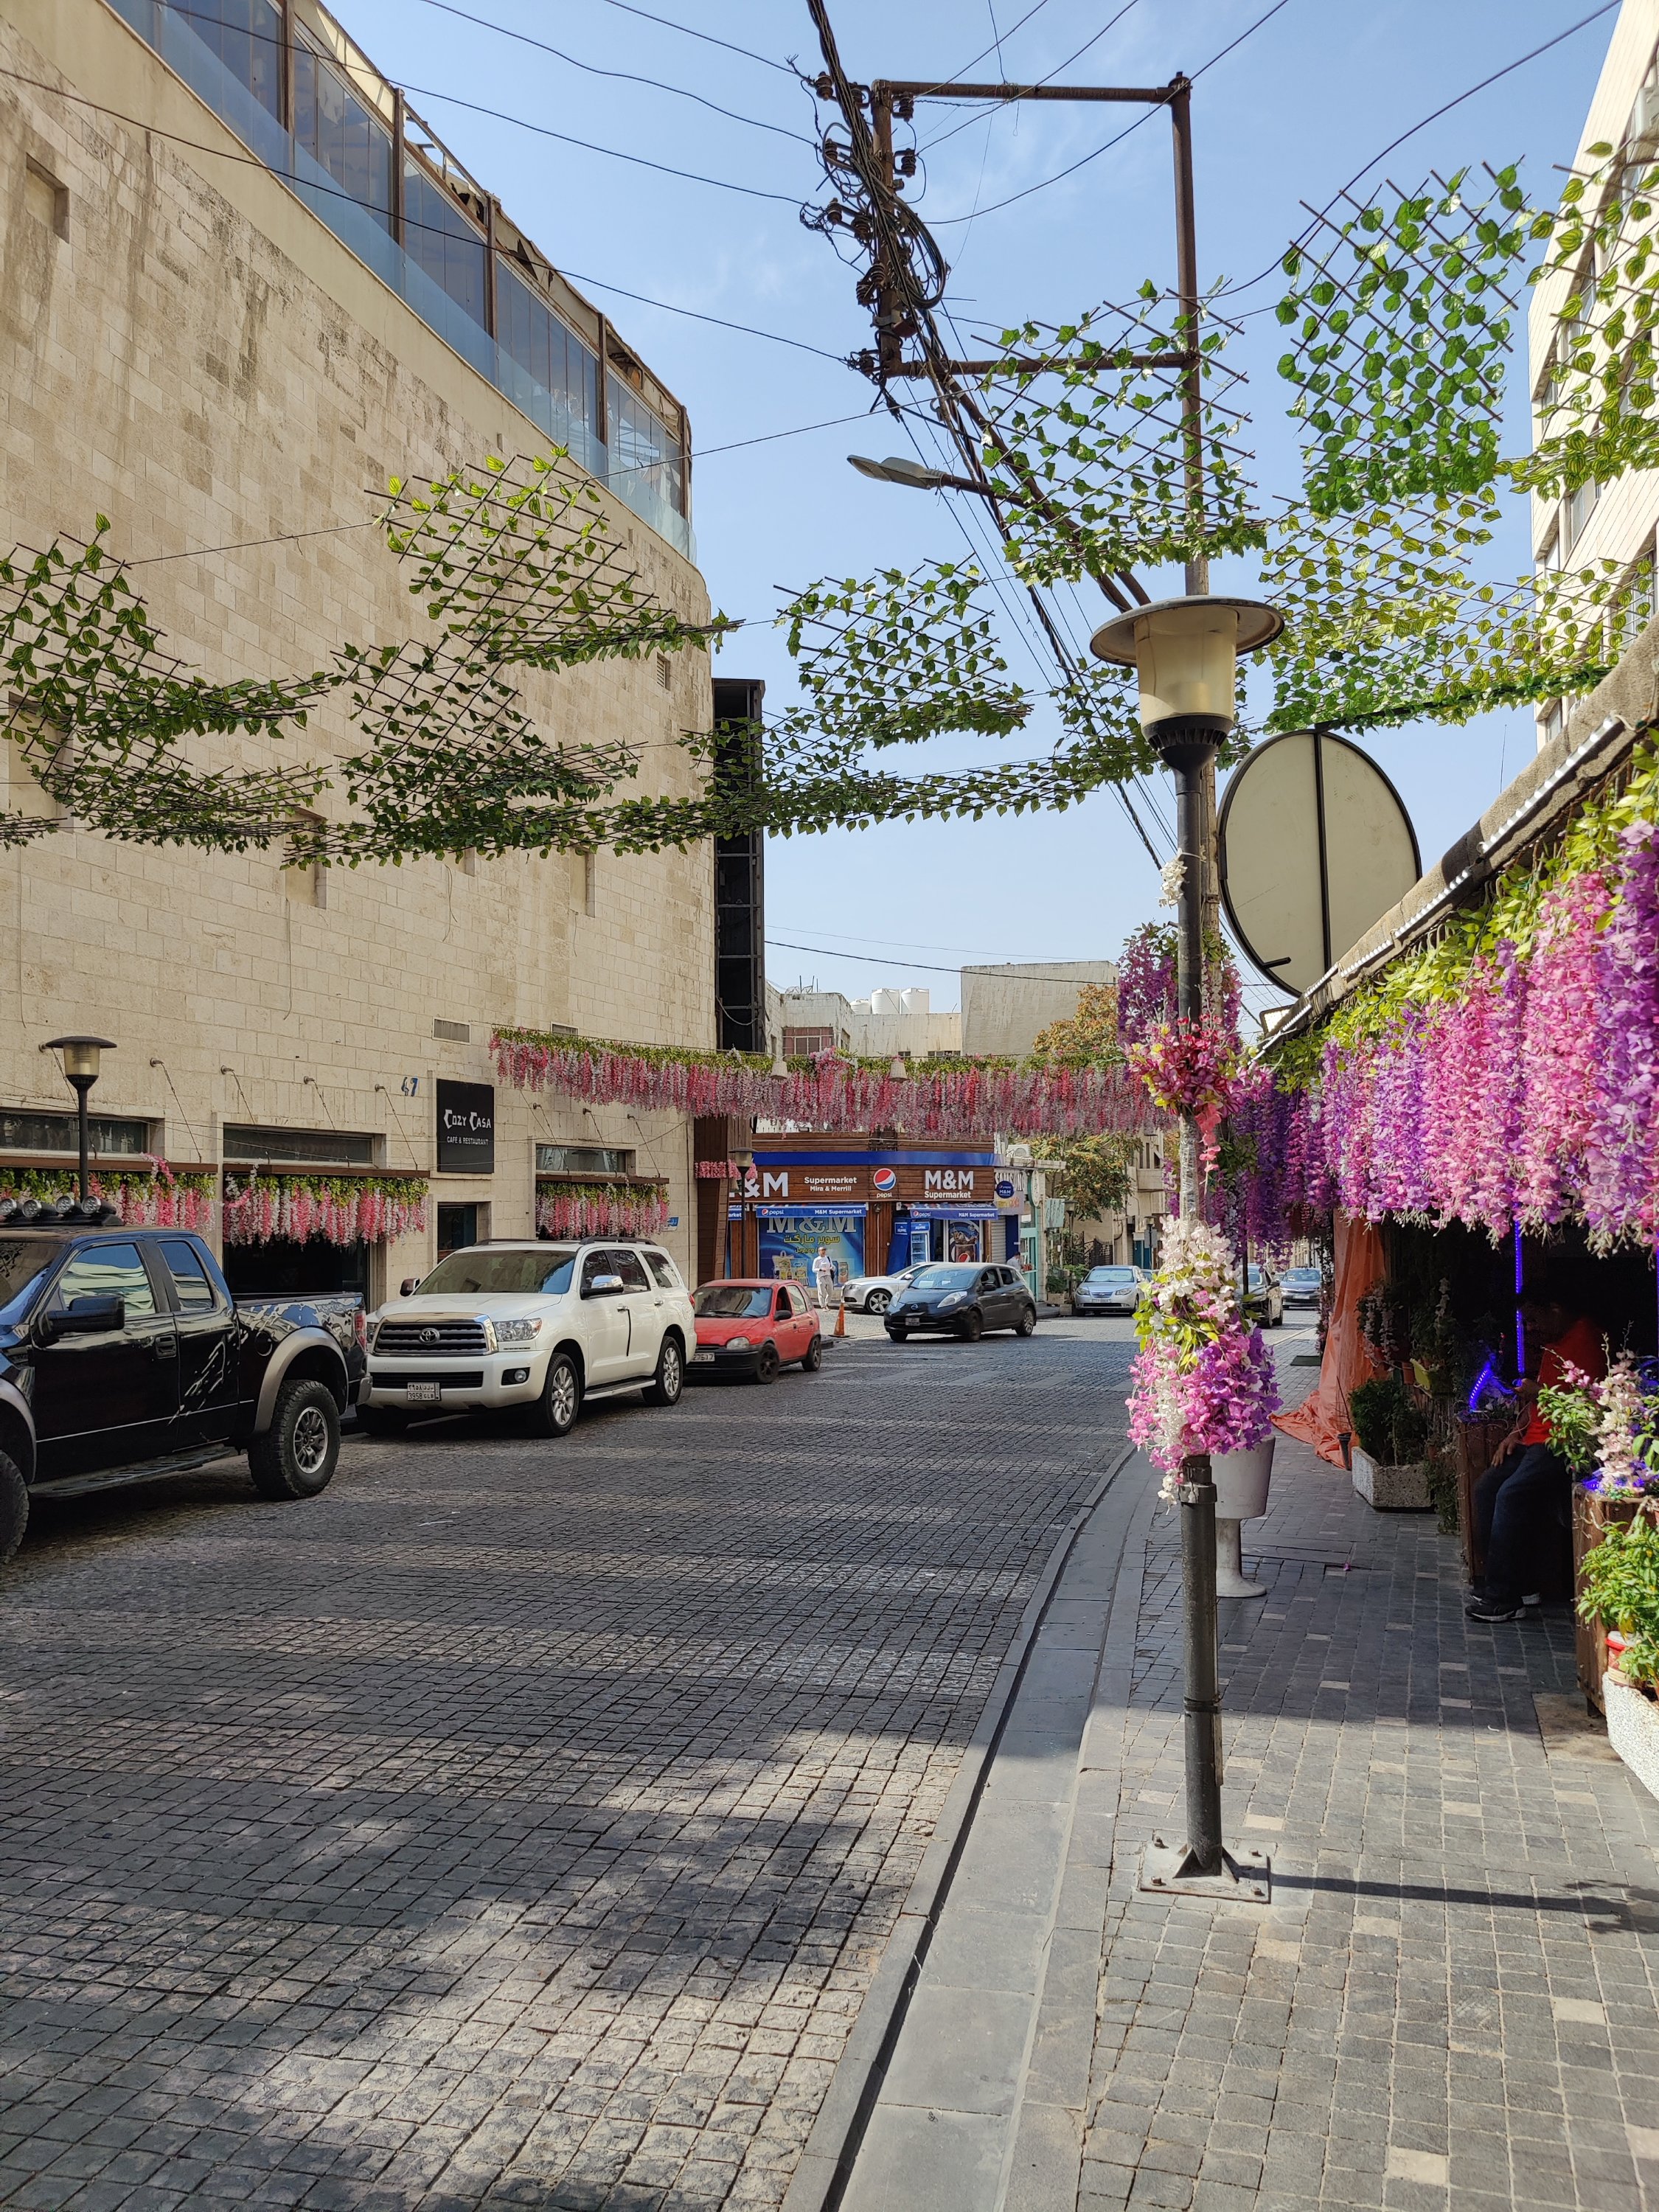 Rainbow street Amman